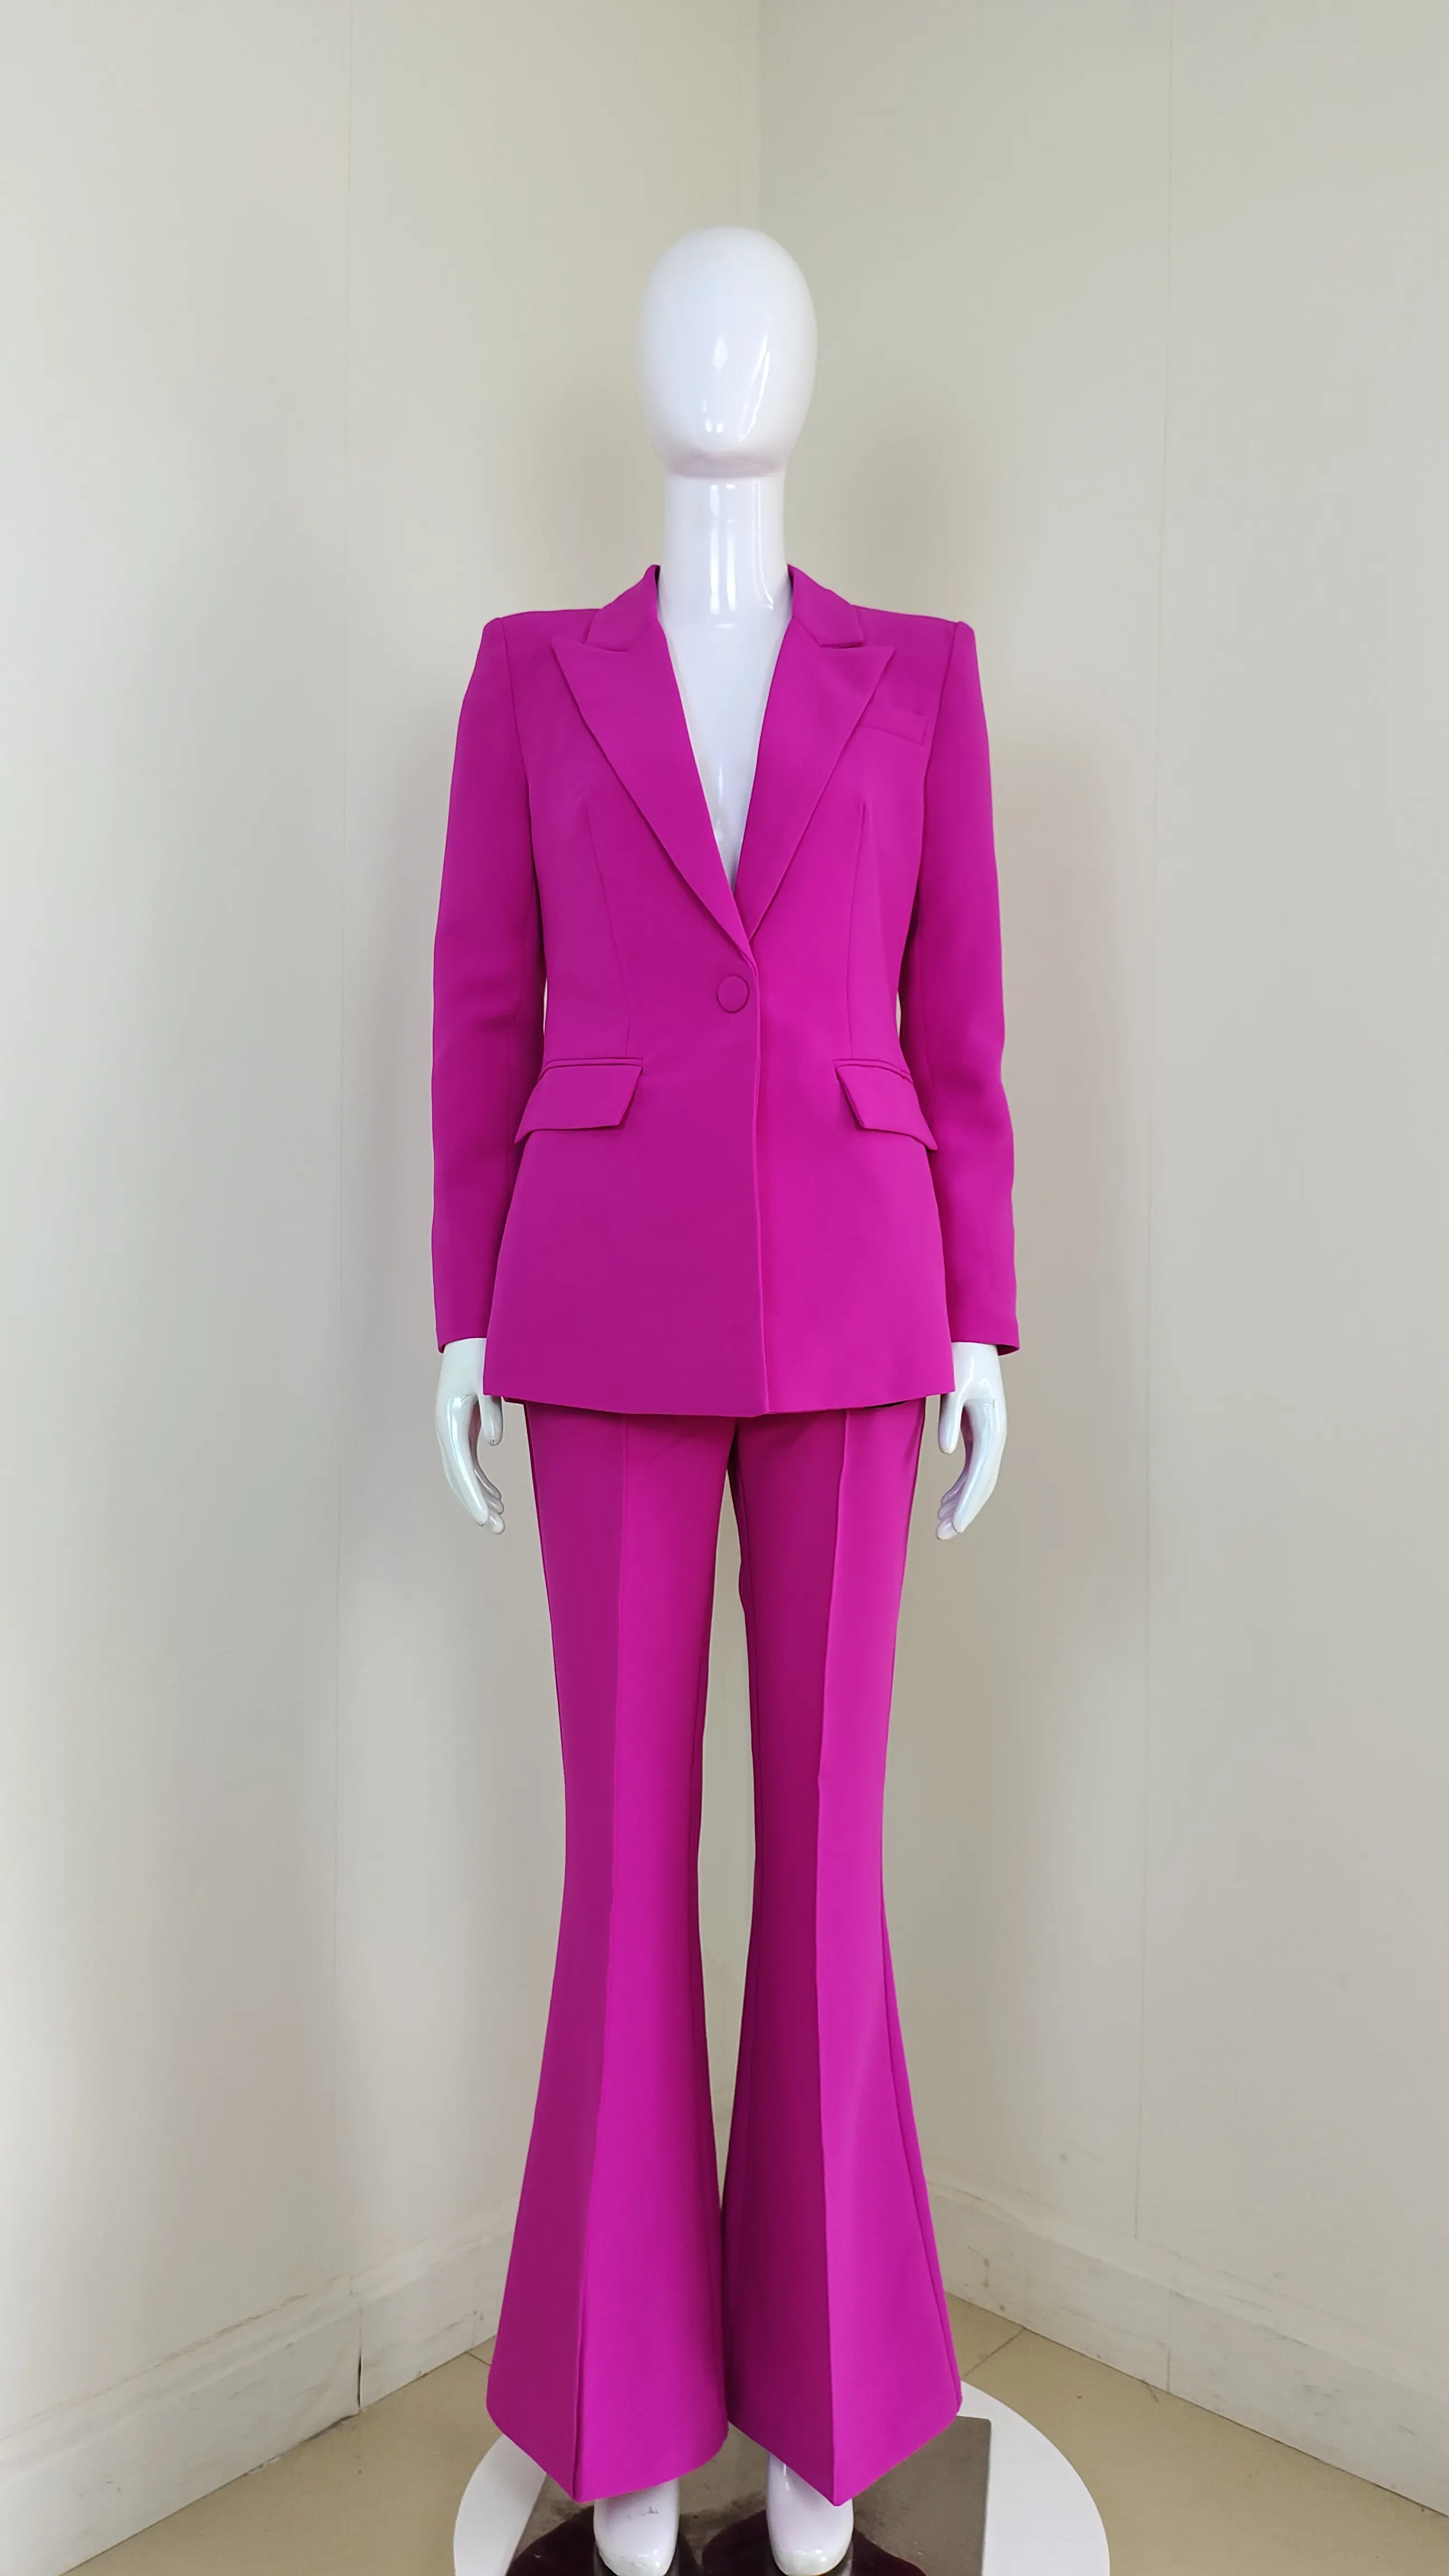 オフィスウェア用ブレザーとロングパンツを備えたプロフェッショナルプラスサイズの女性用ツーピーススーツ